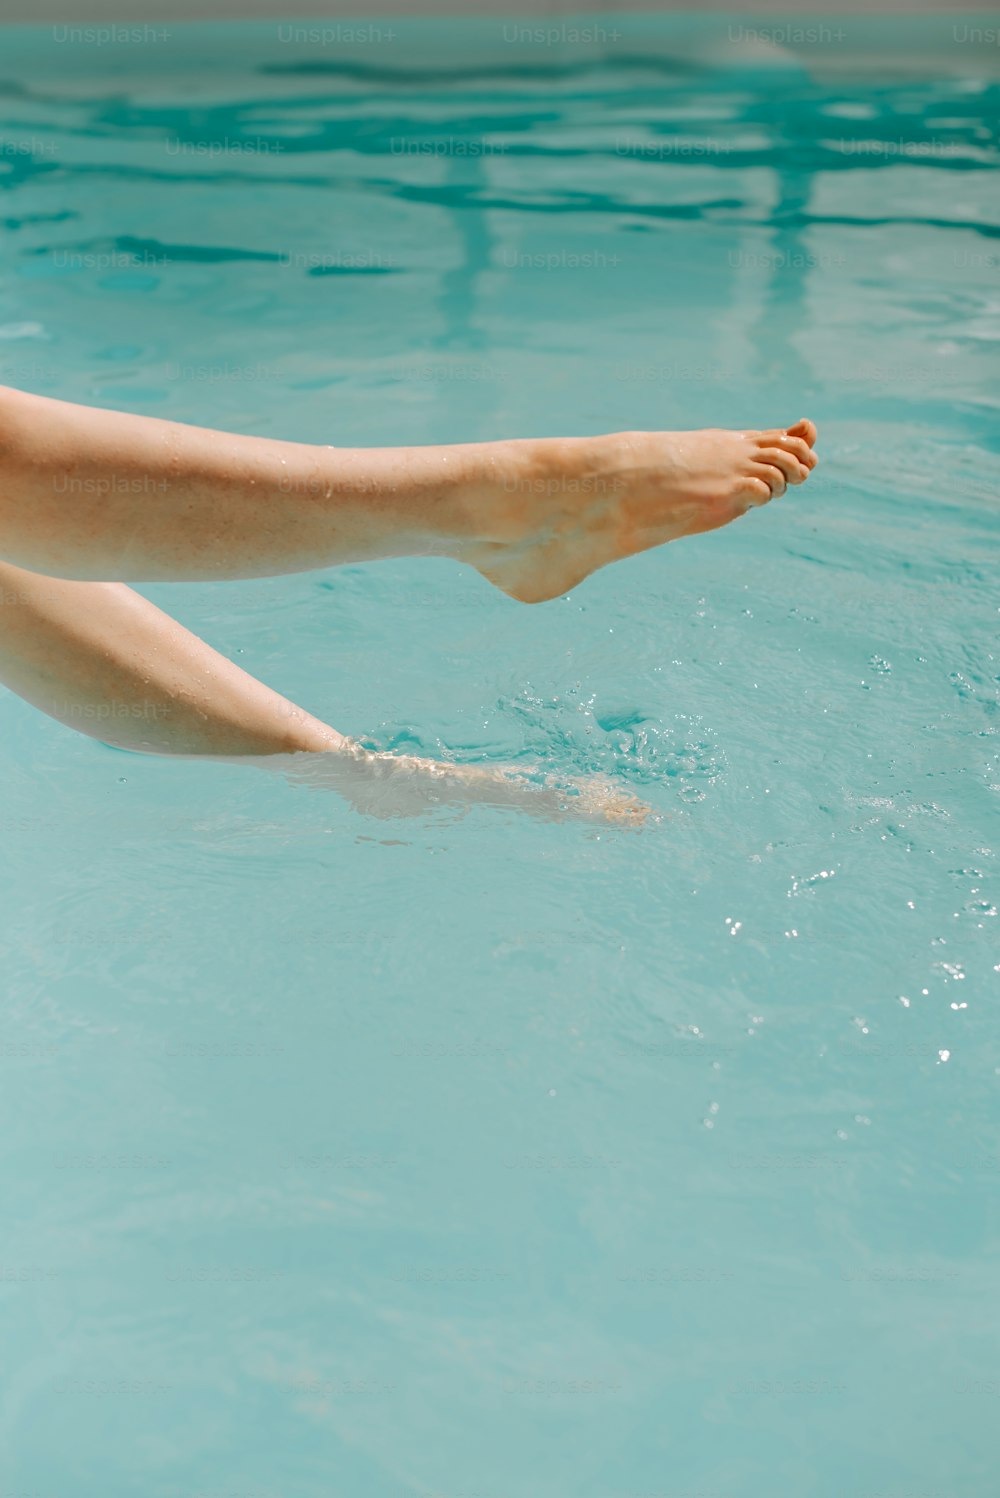 Los pies descalzos de una mujer flotando en un charco de agua